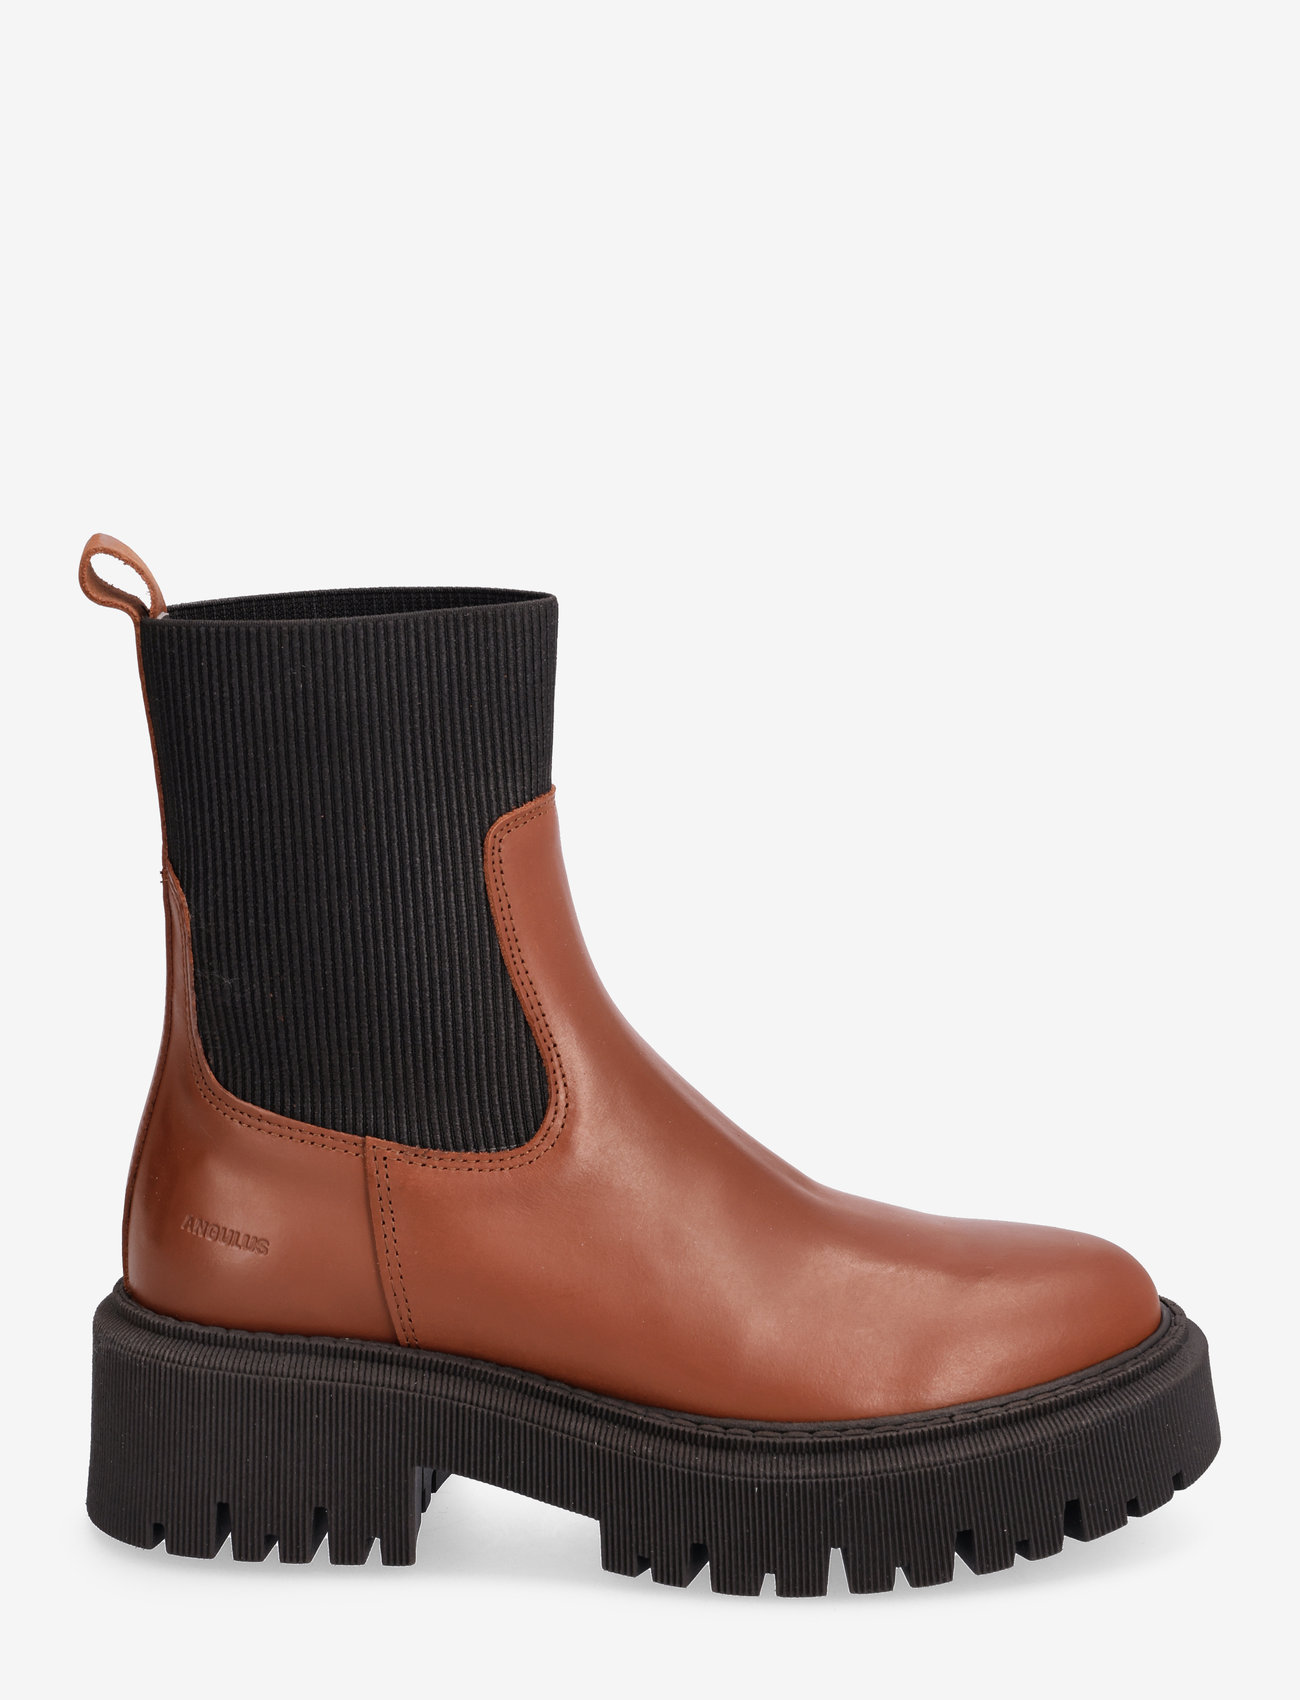 ANGULUS - Boots - flat - puszābaki bez papēža - 1705/019 terracotta/black - 1